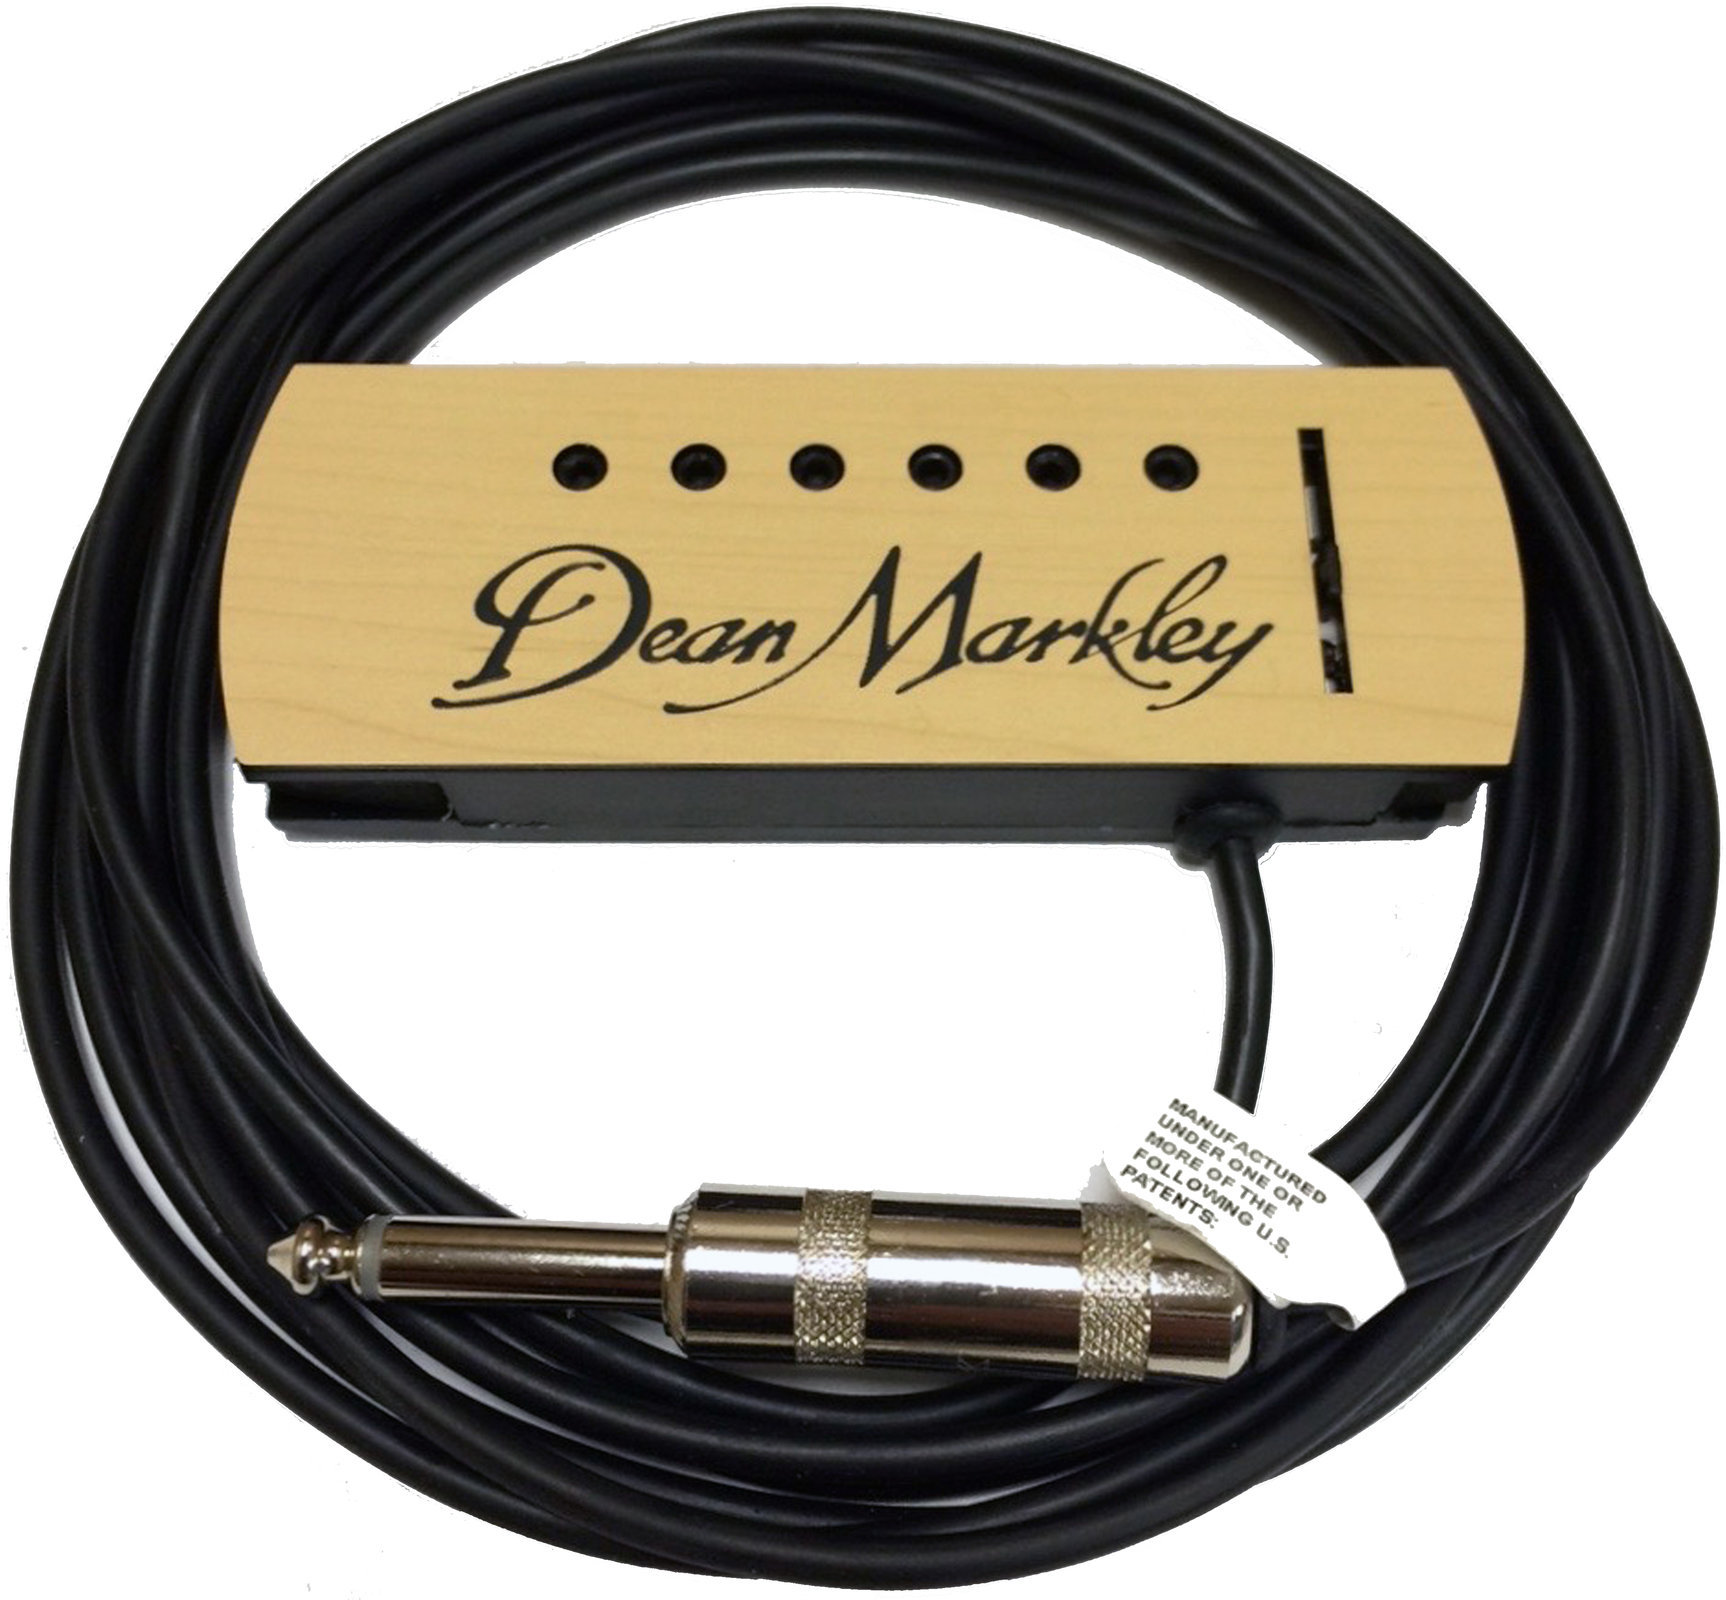 Przetwornik do gitary akustycznej Dean Markley 3050 ProMag Professional